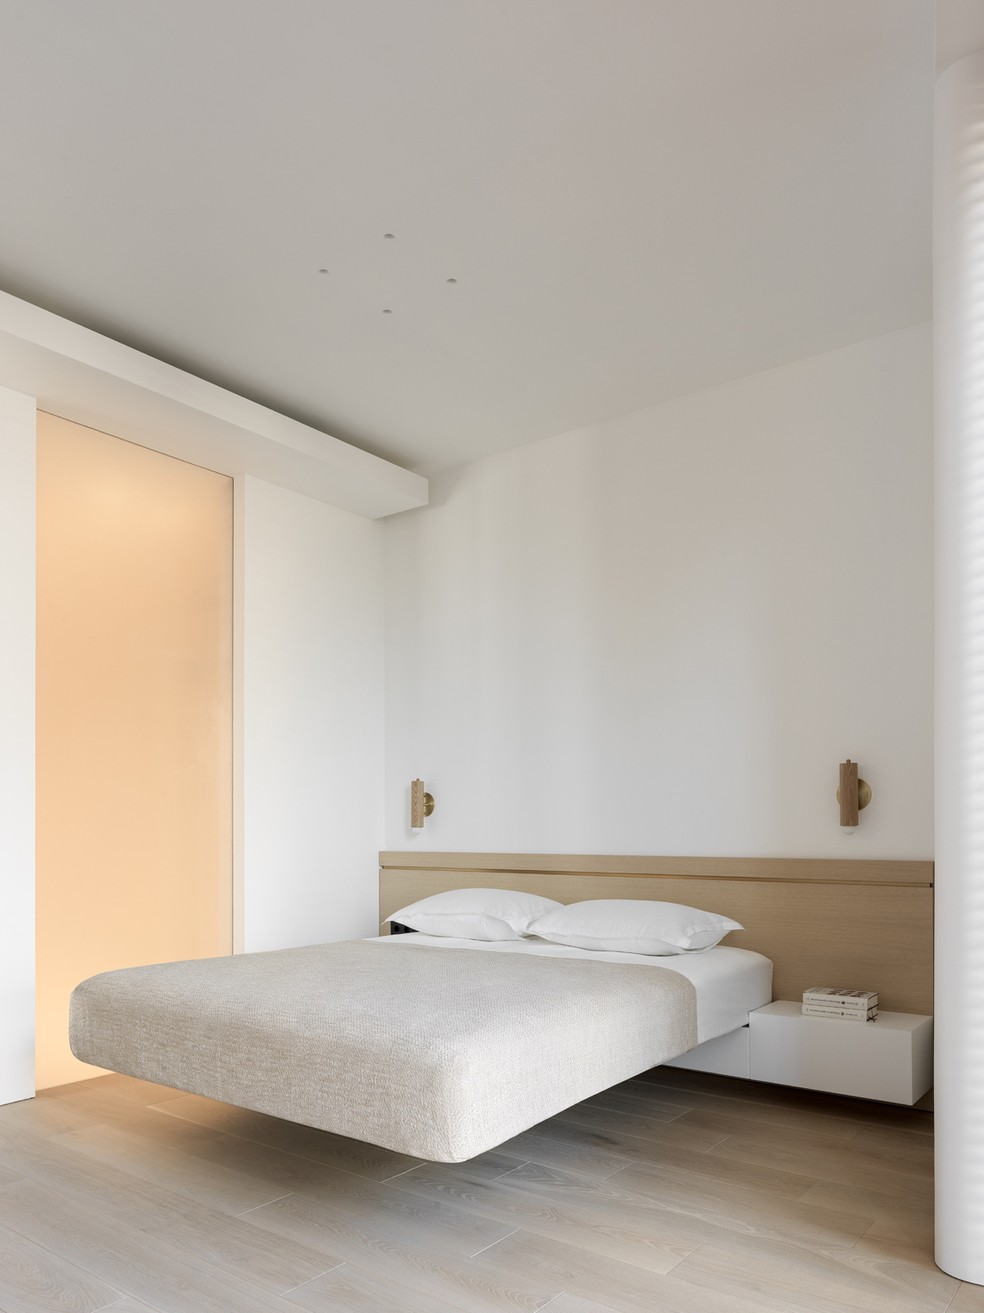 QUARTO | A cama suspensa parece flutuar em um espaço clean, cujo visual remete ao conceito arquitetônico escandinavo — Foto: Sergey Krasyuk / Divulgação